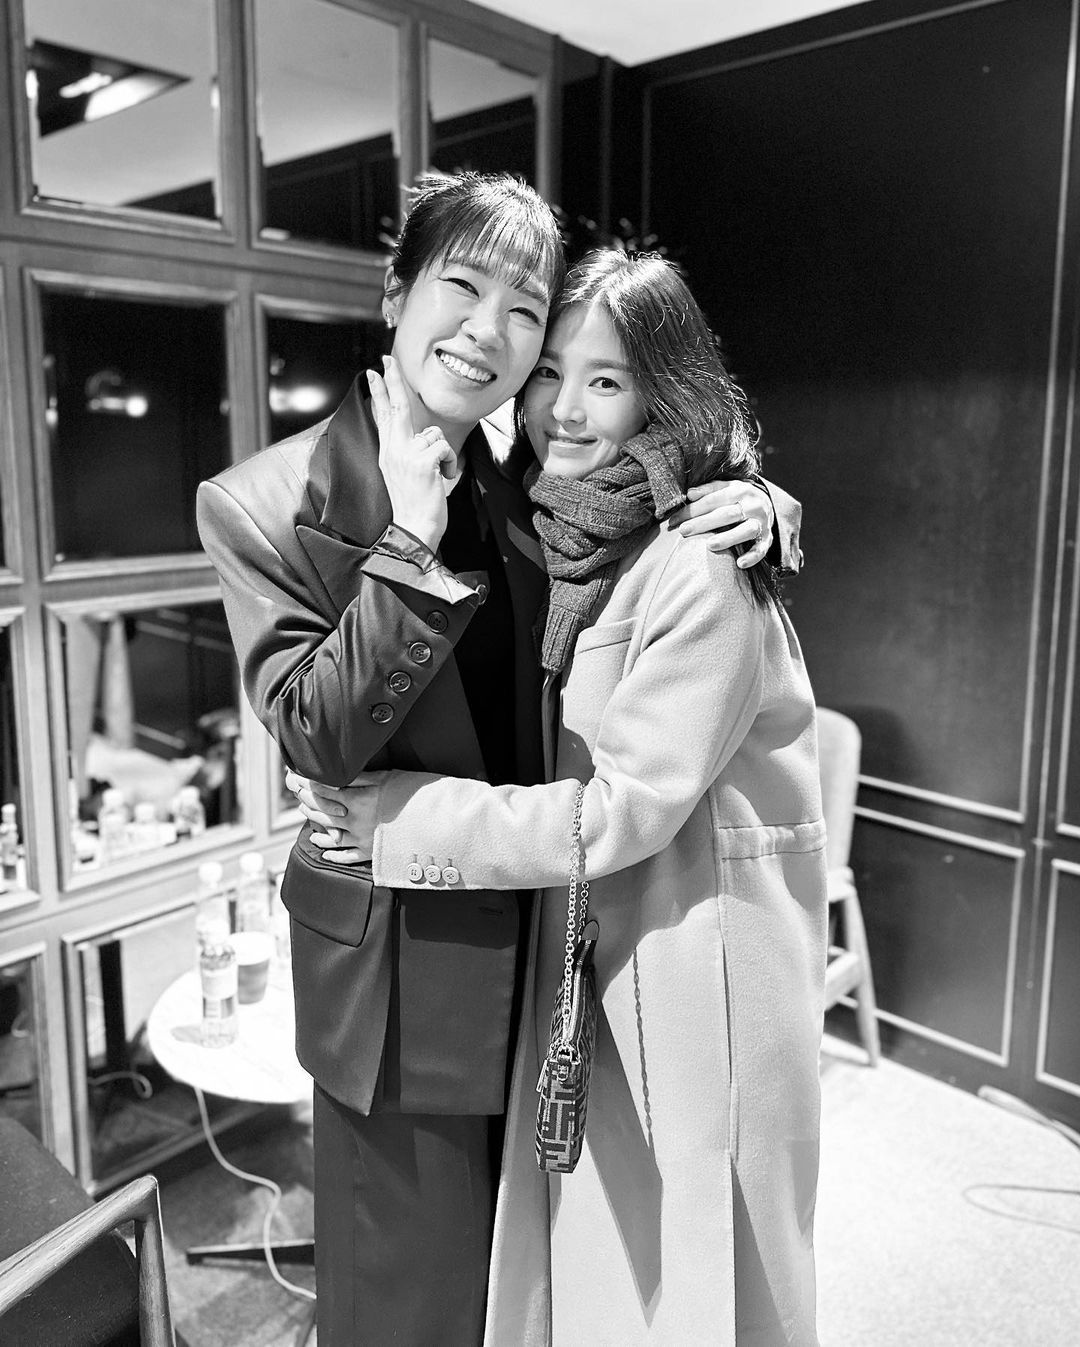 ソン・ヘギョ、『ザ・グローリー』で共演のヨム・ヘランと抱き合いポーズ